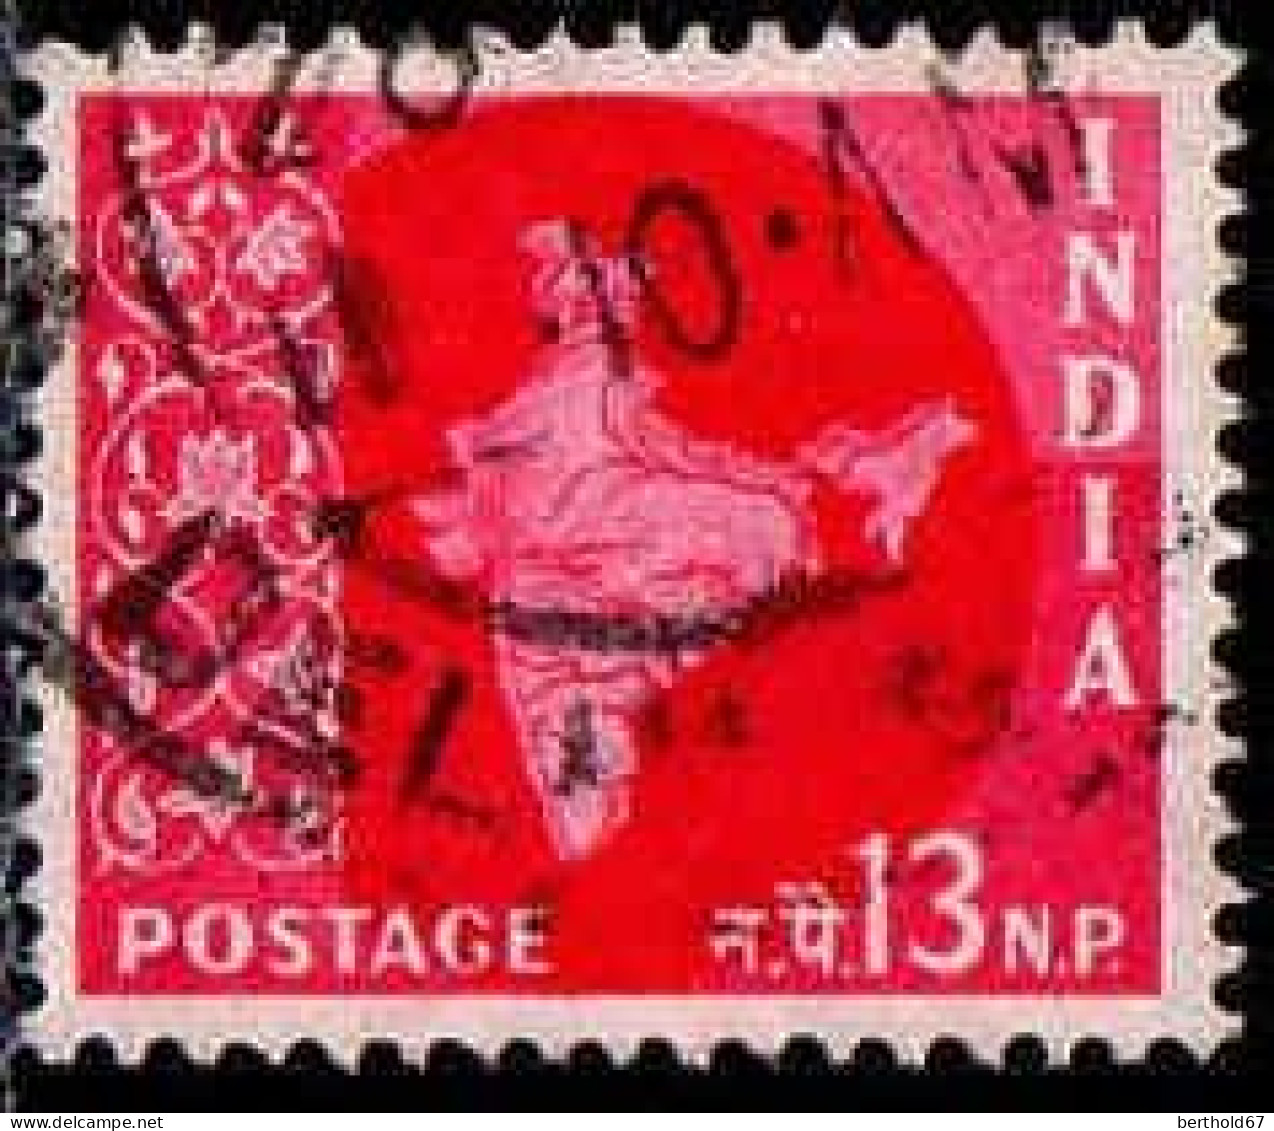 Inde Poste Obl Yv:  77 Mi:266 Carte De L'Inde (TB Cachet Rond) - Used Stamps